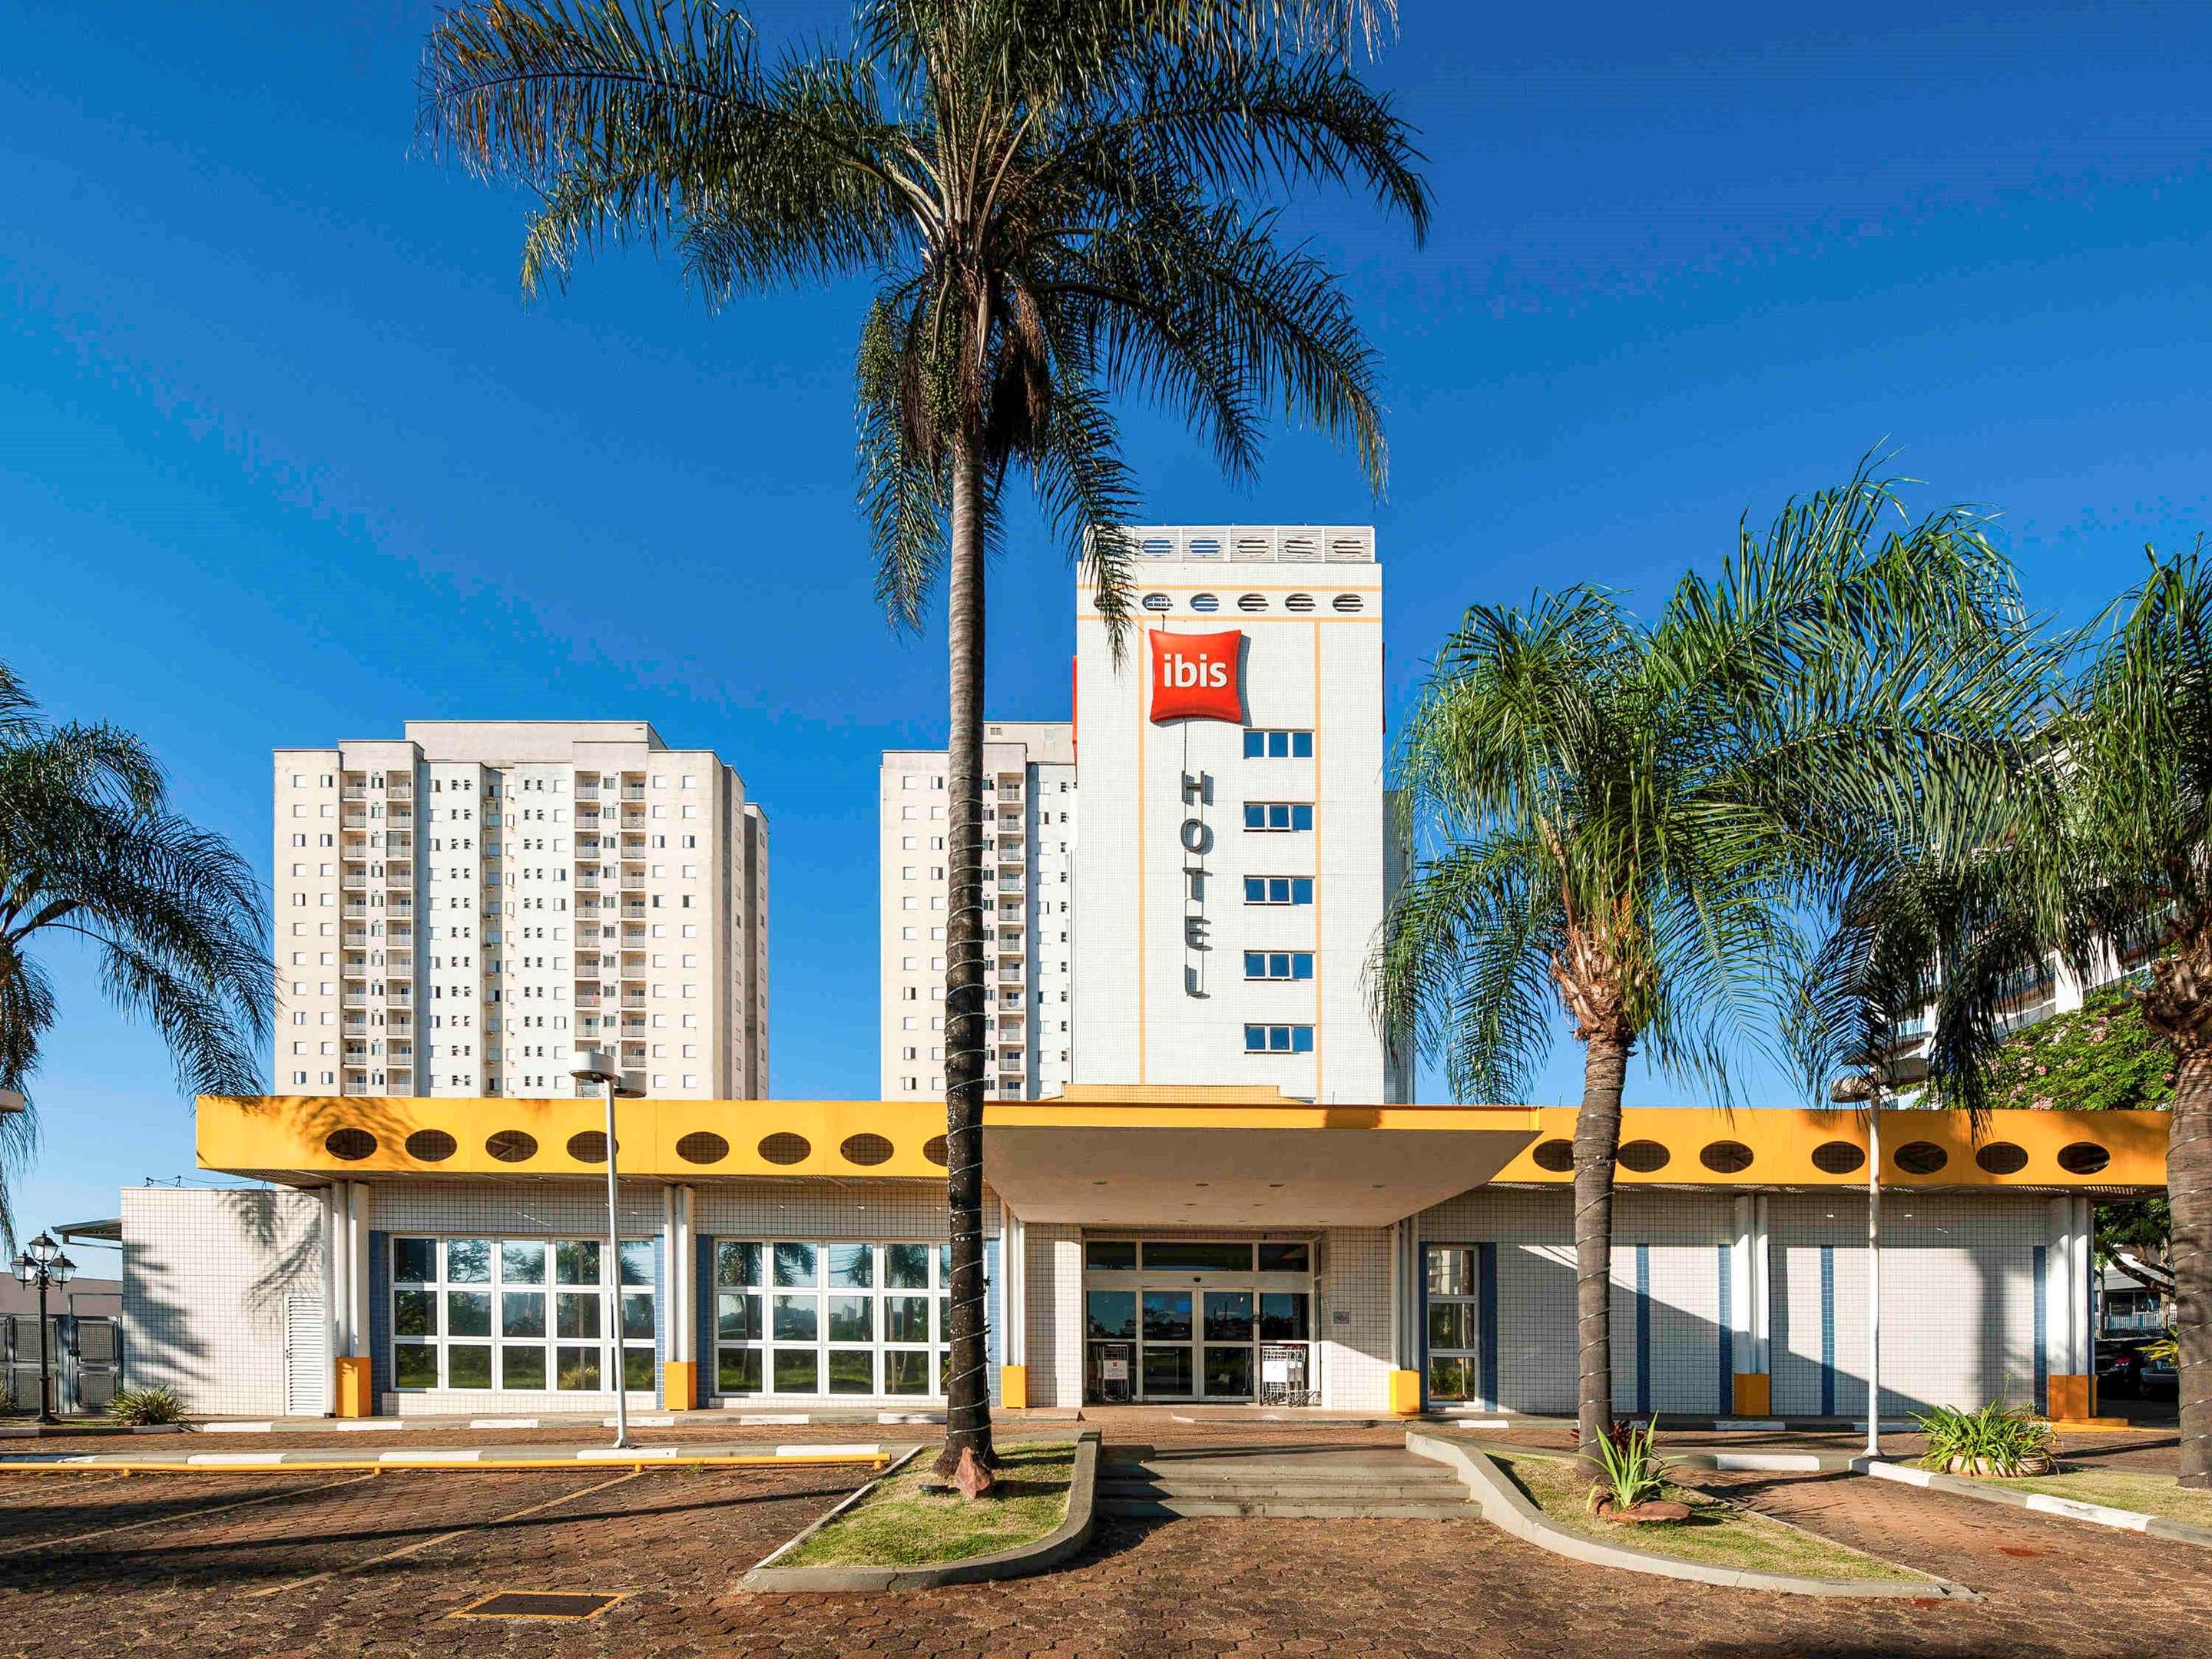 Hotel em São Carlos econômico e bem localizado